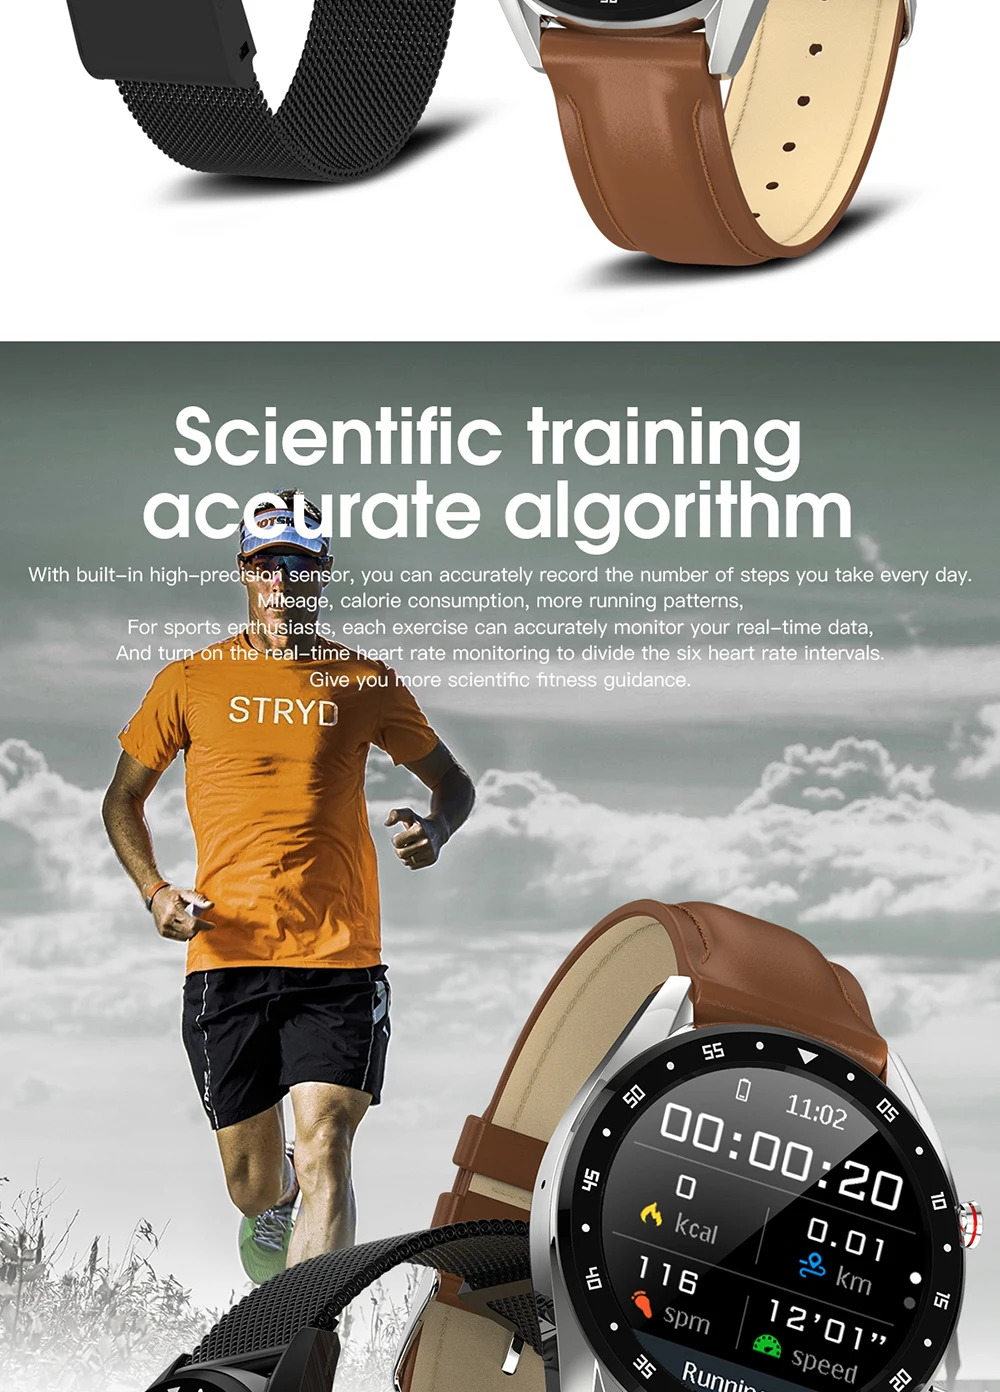 696 K7 Смарт-часы спортивные водонепроницаемые L7 BTcall умные часы HRV отчет пульса монитор артериального давления часы фитнес-браслет